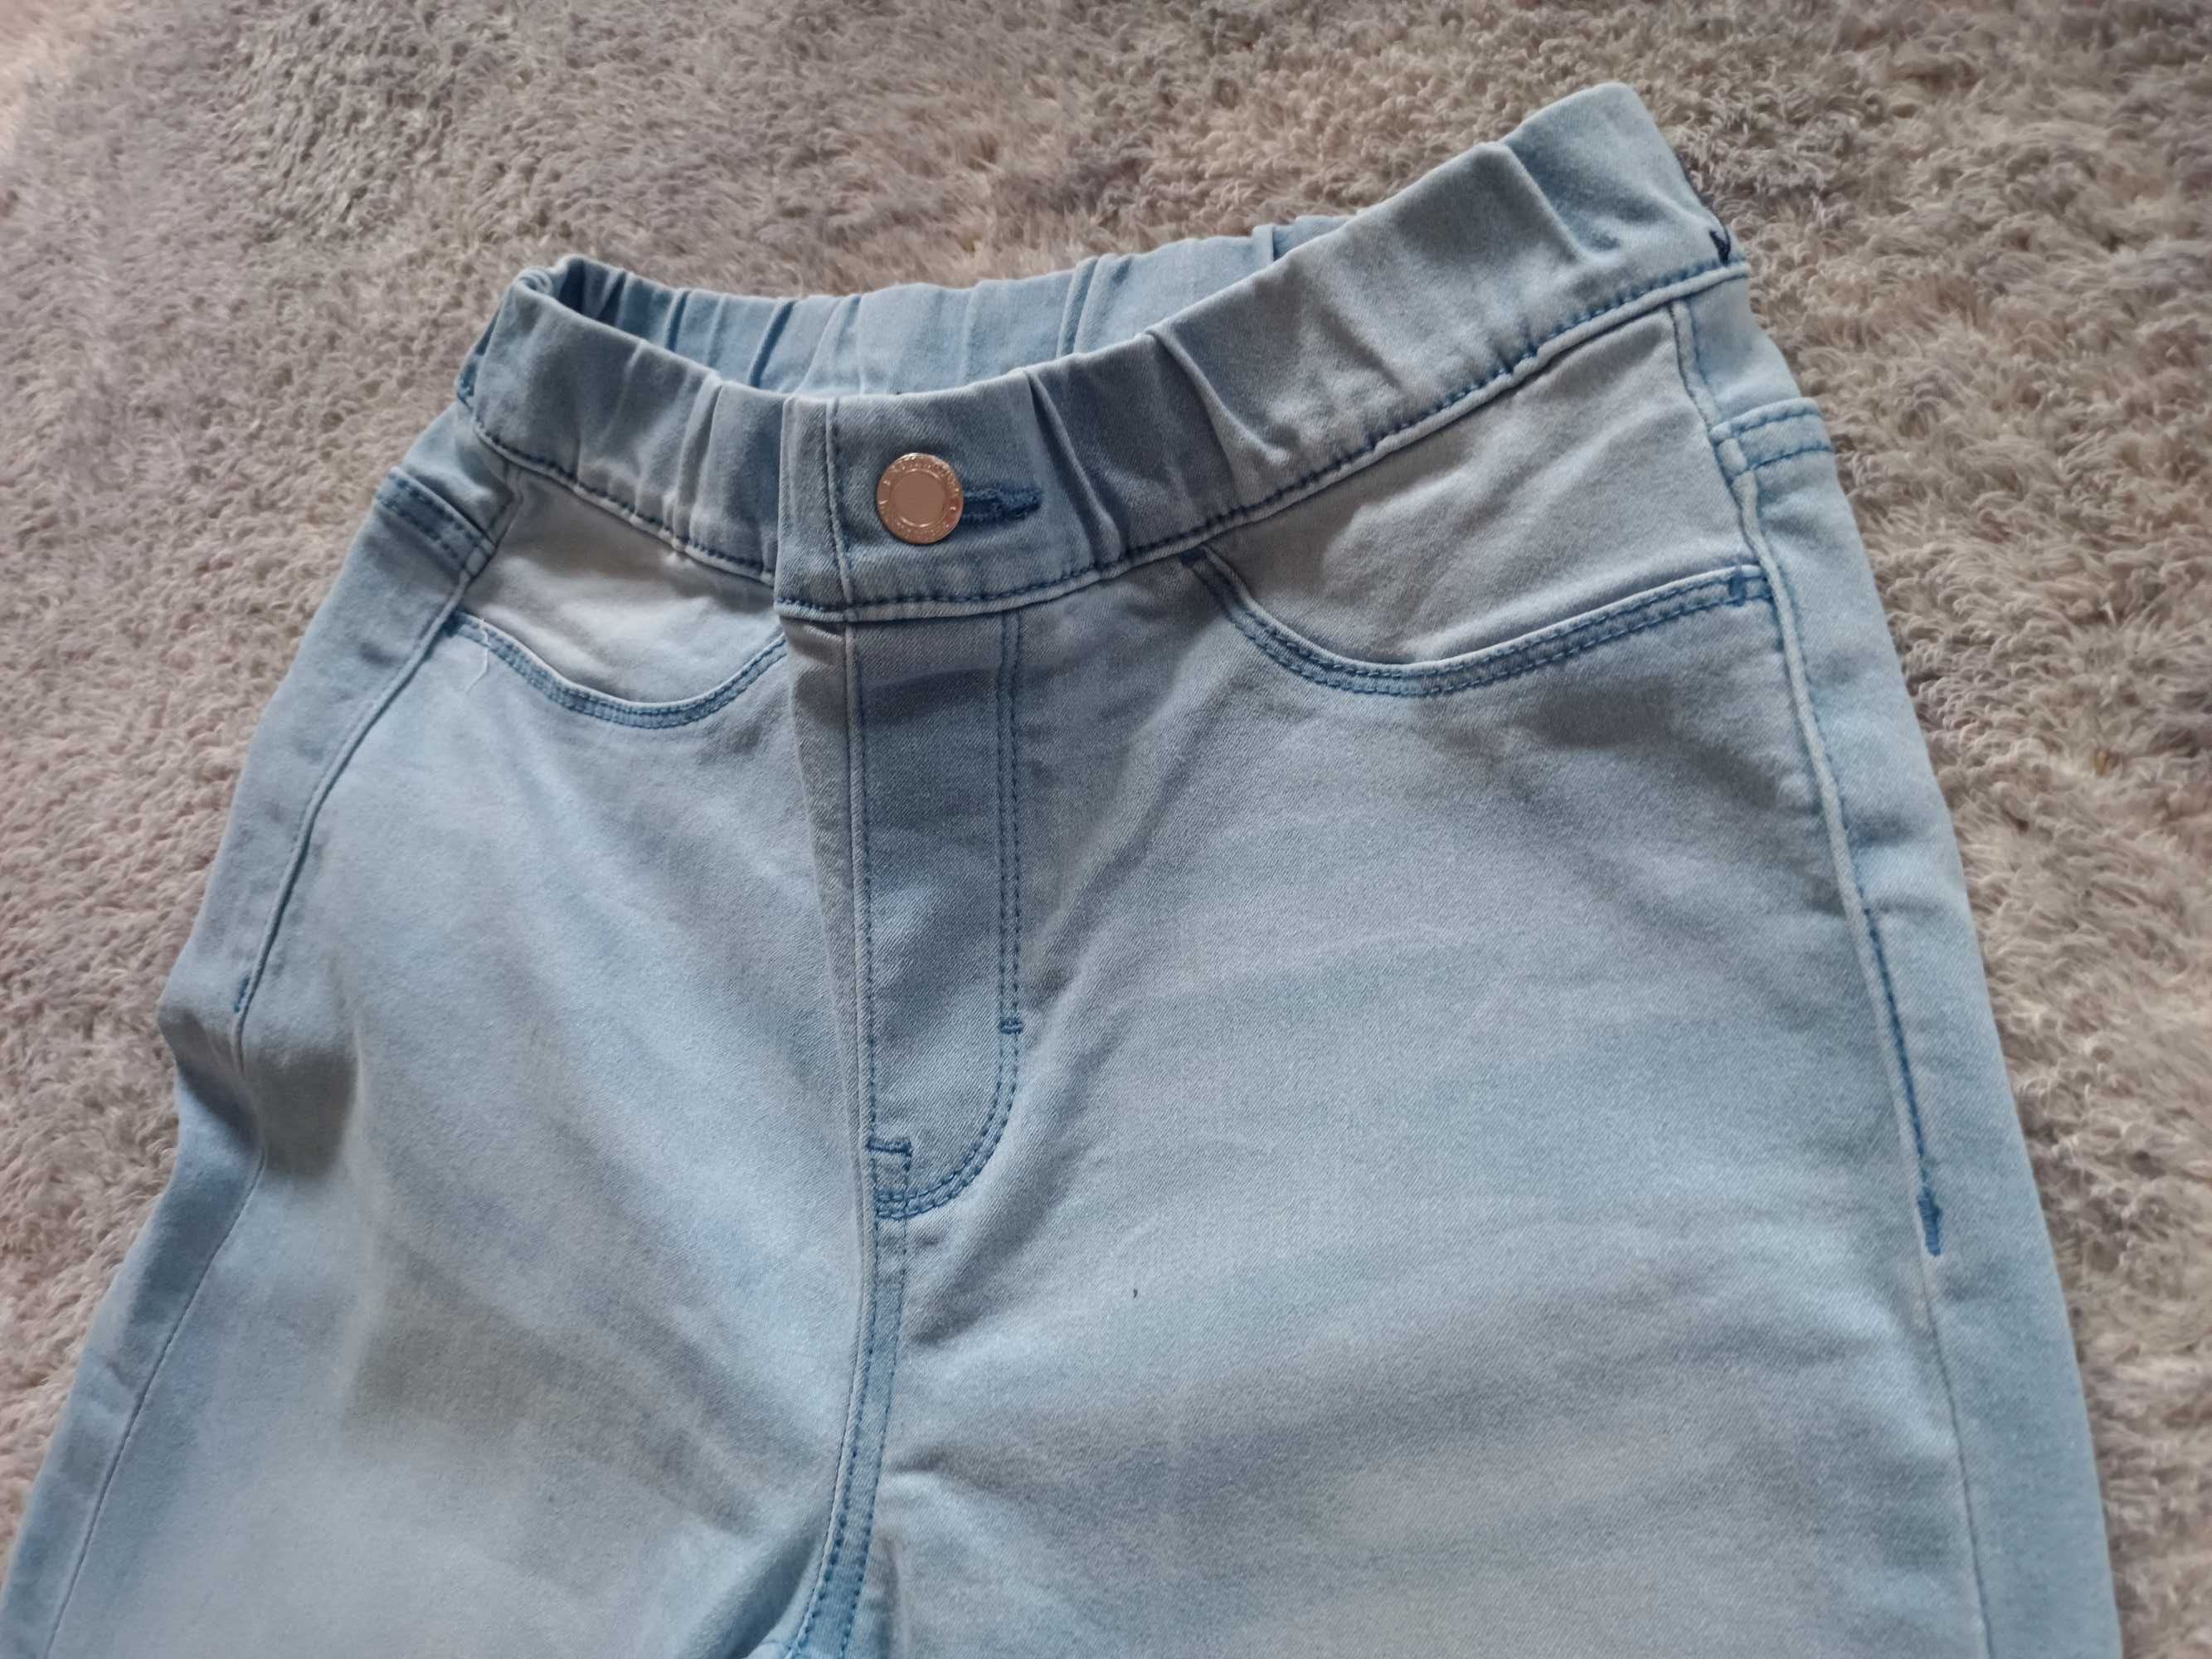 Jegginsy blue Esmara 36,s miękki jeans, dopasowują się do figury